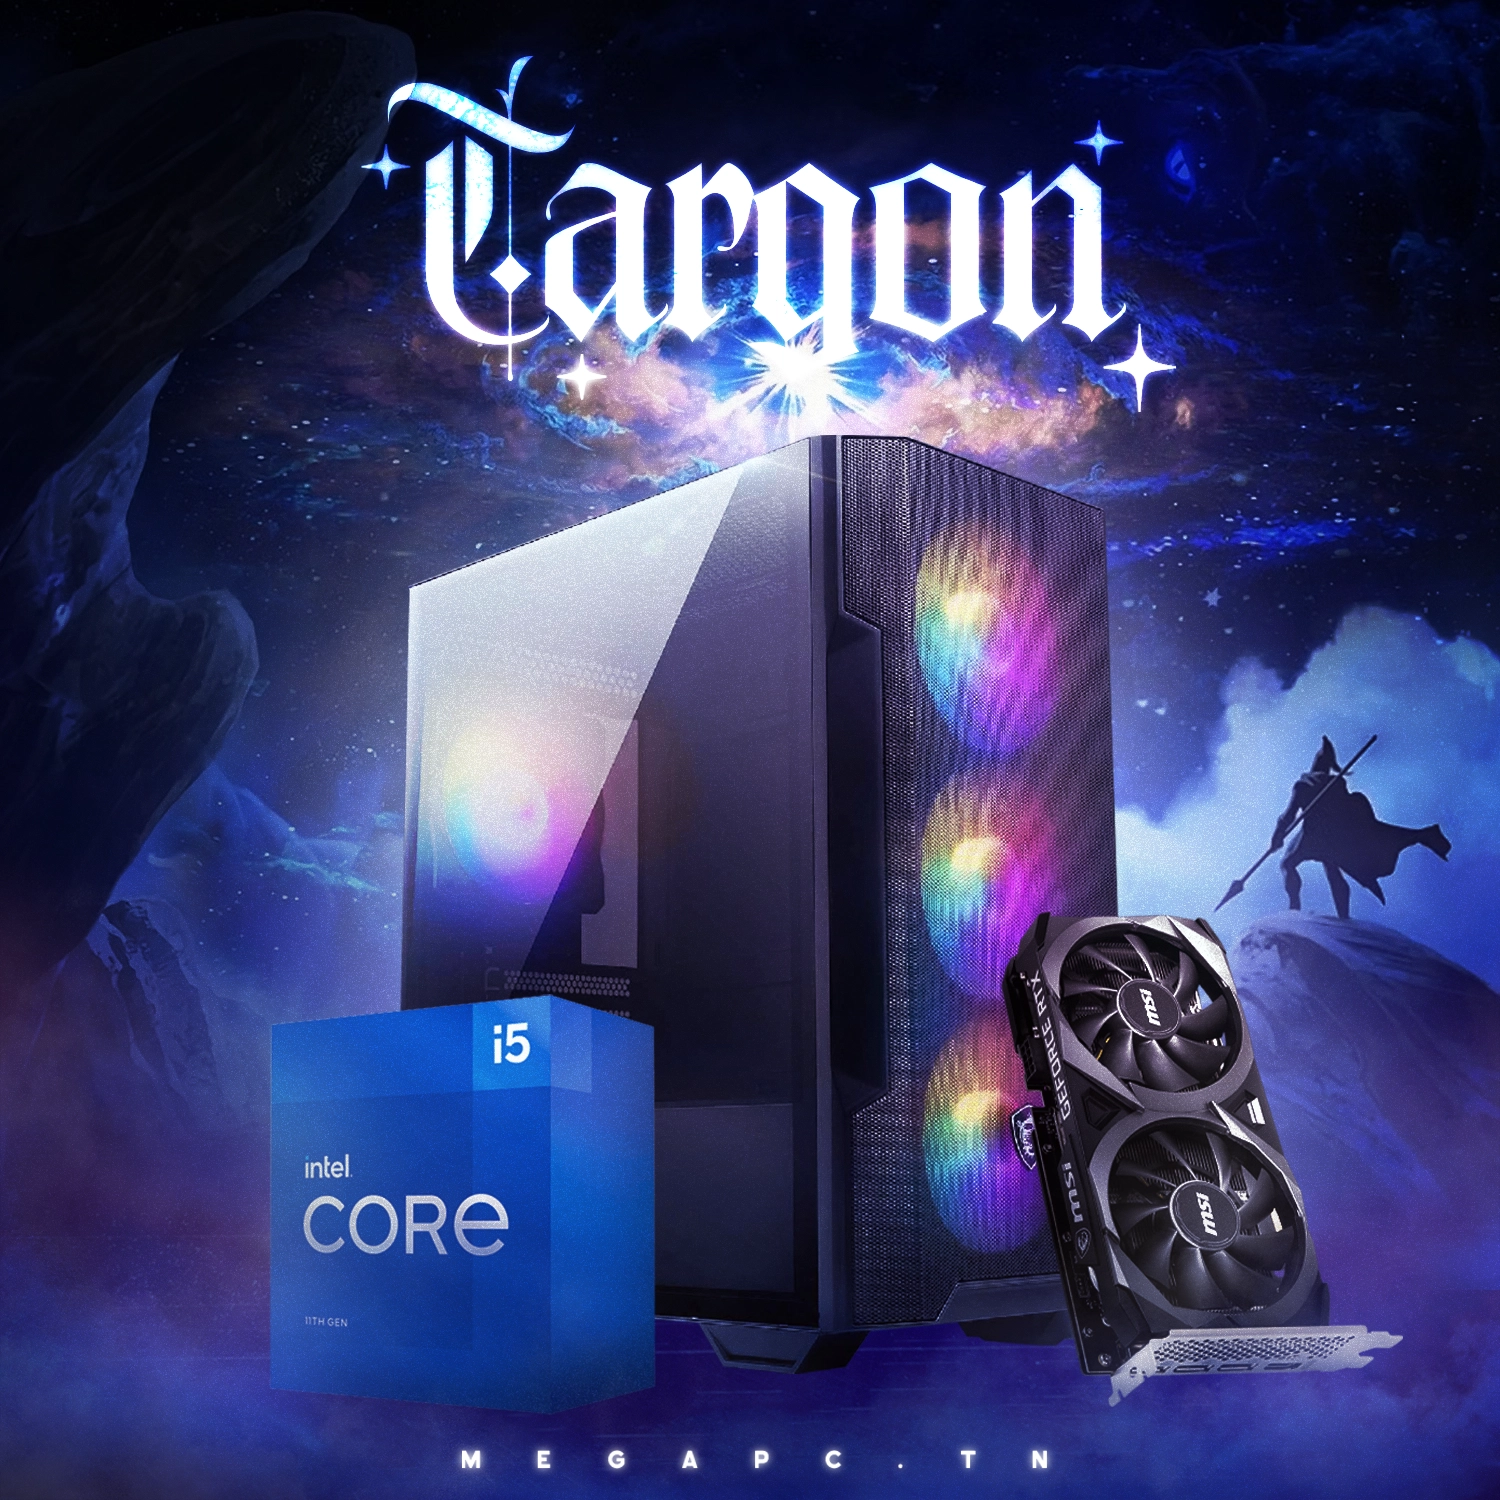 Targon 2 | I5-11400F | RTX 3050 8GB | 16GB RAM | 500 GB